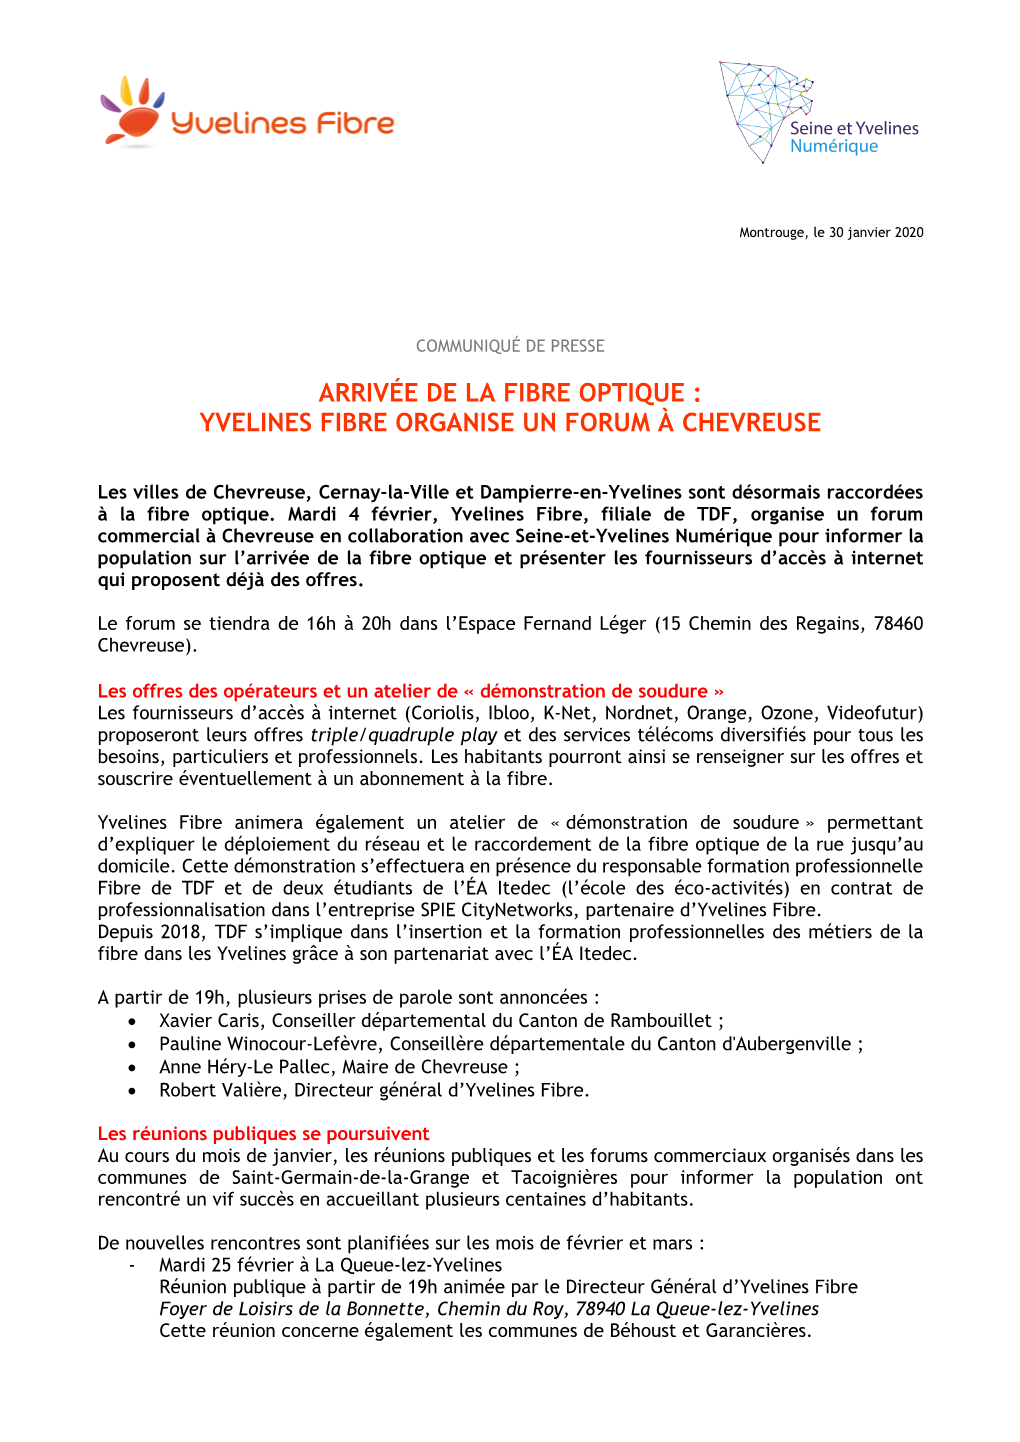 Yvelines Fibre Organise Un Forum À Chevreuse